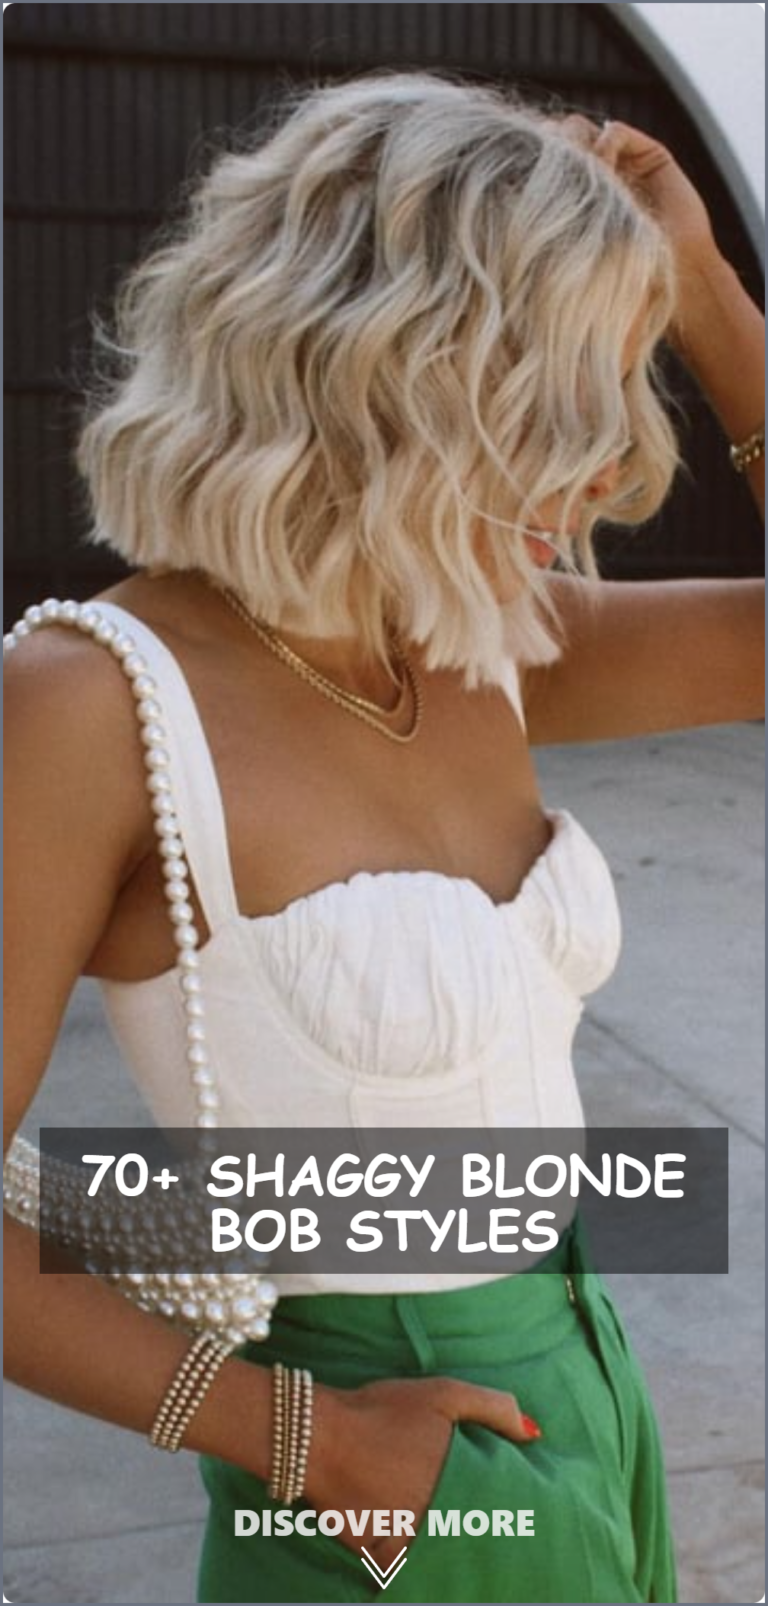 Shaggy Blonde Bob